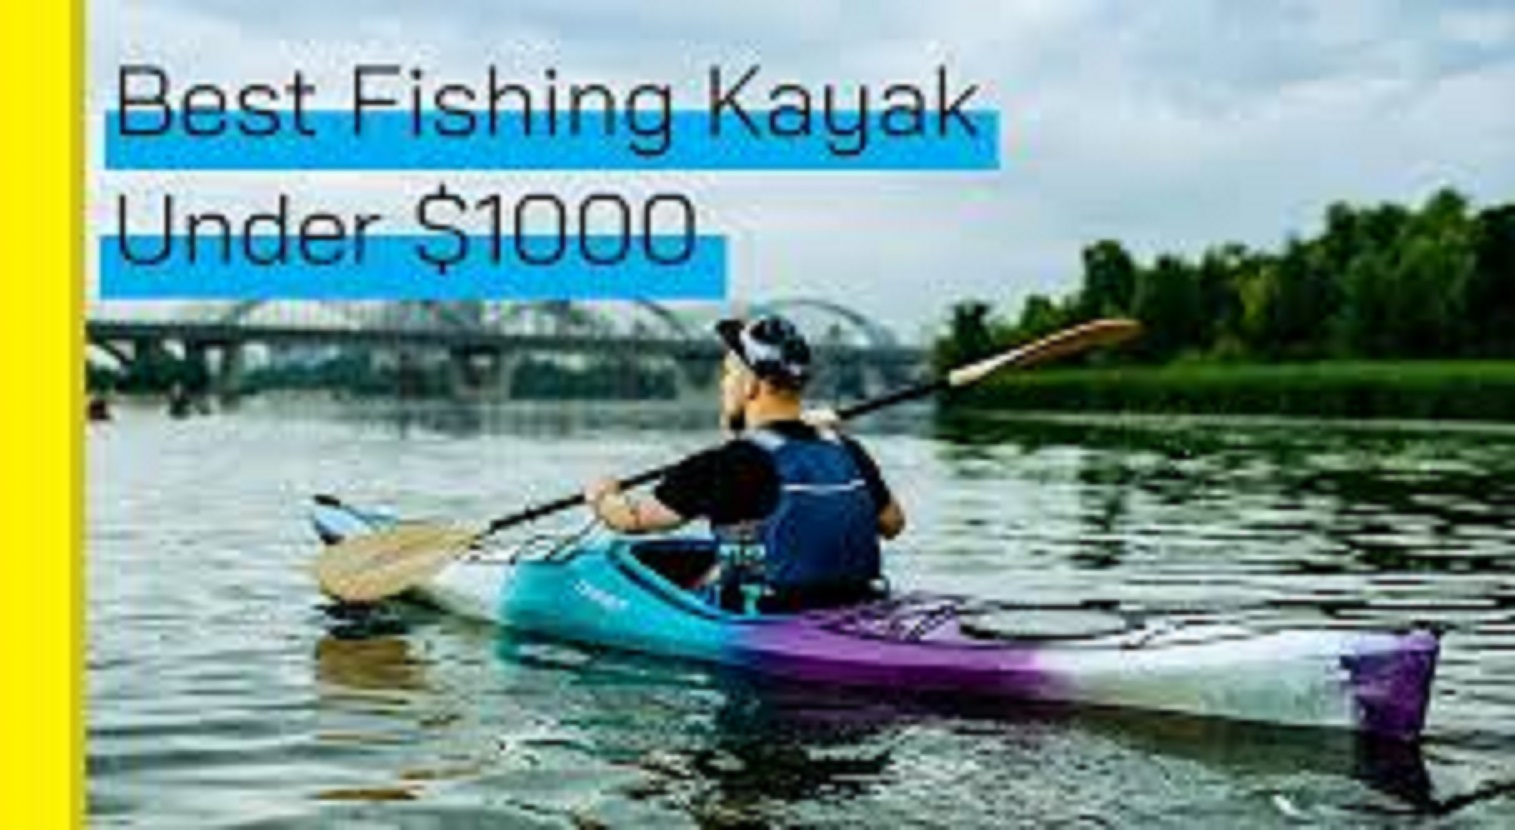 Kayaks under $1,000 – Buying Guide